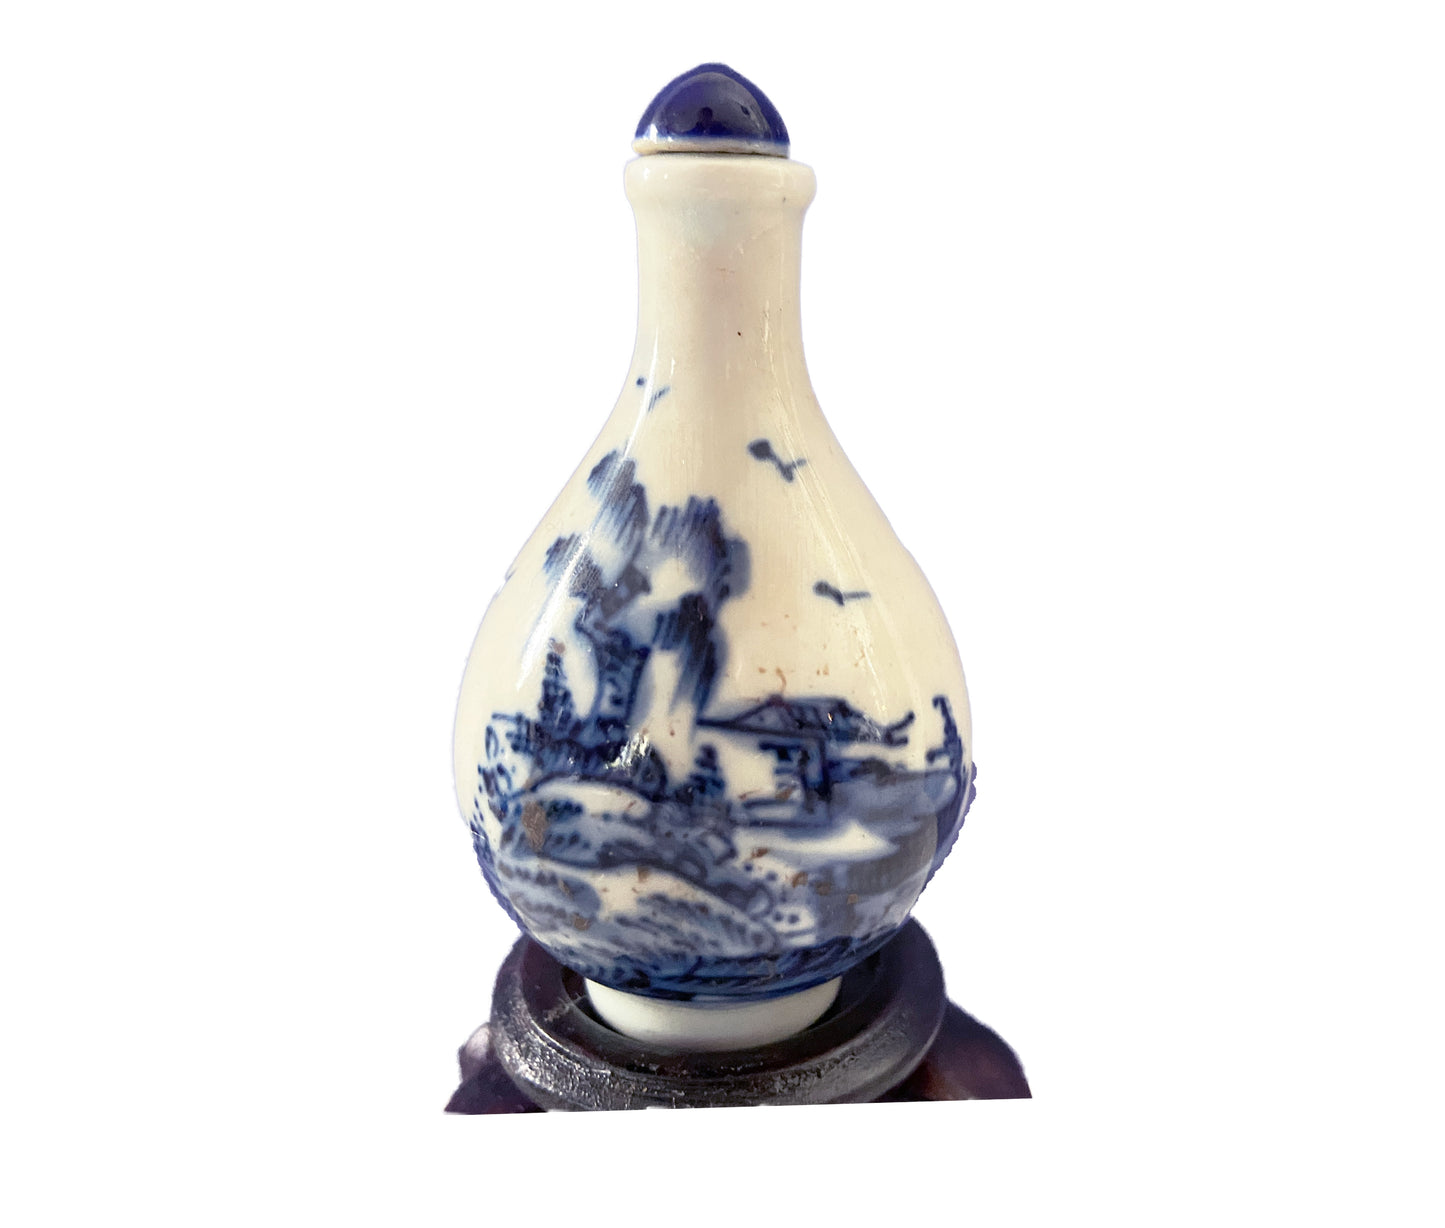 Vtg Chinoiserie Blue & White Porcelain Snuff Bottle on Stand 4.25" H